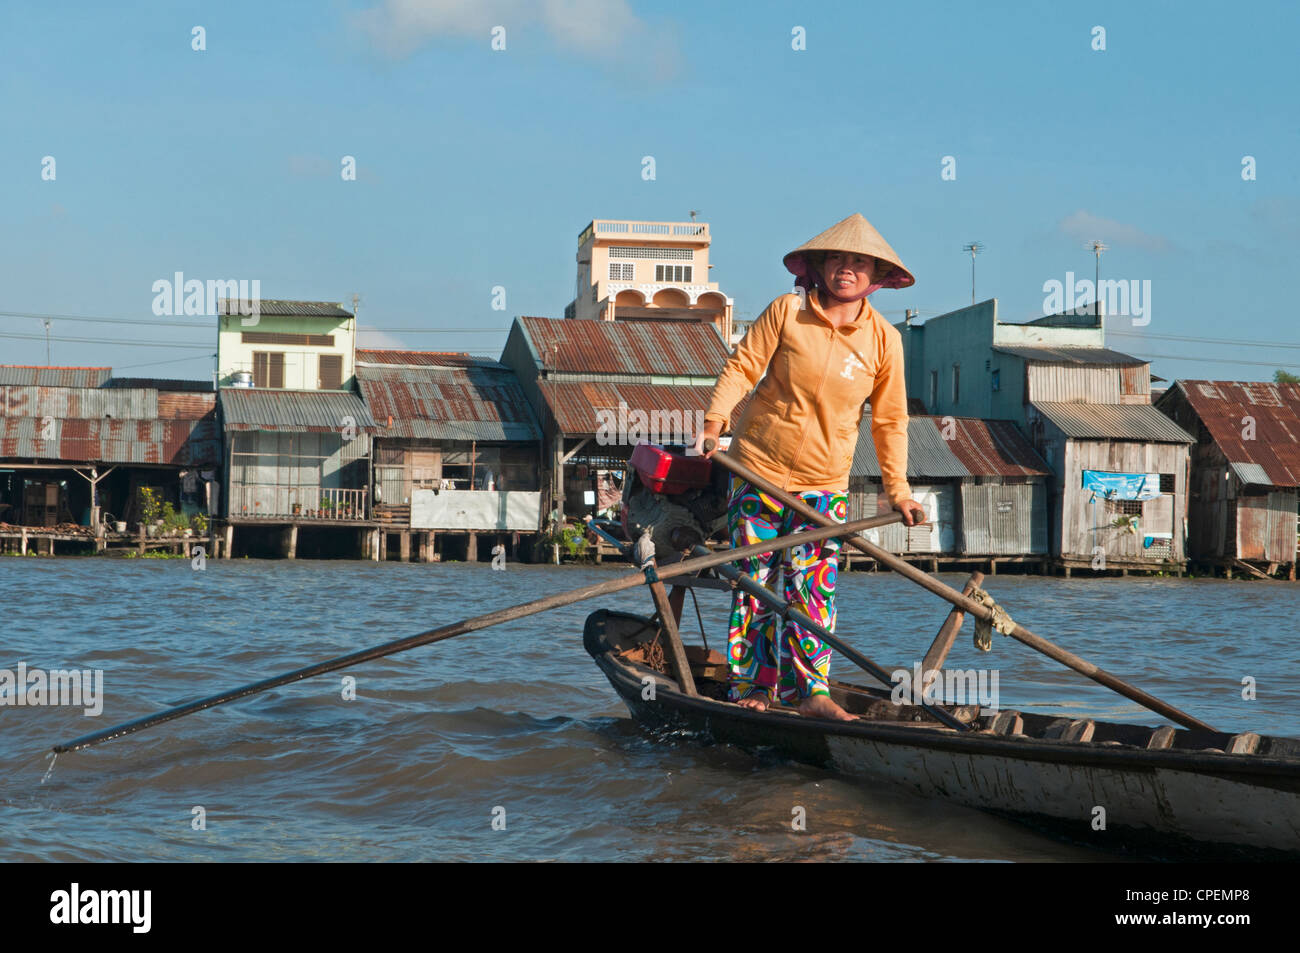 Son bateau aviron vendeur vietnamiens au marché flottant de Cai Rang dans le Delta du Mékong au Vietnam Banque D'Images